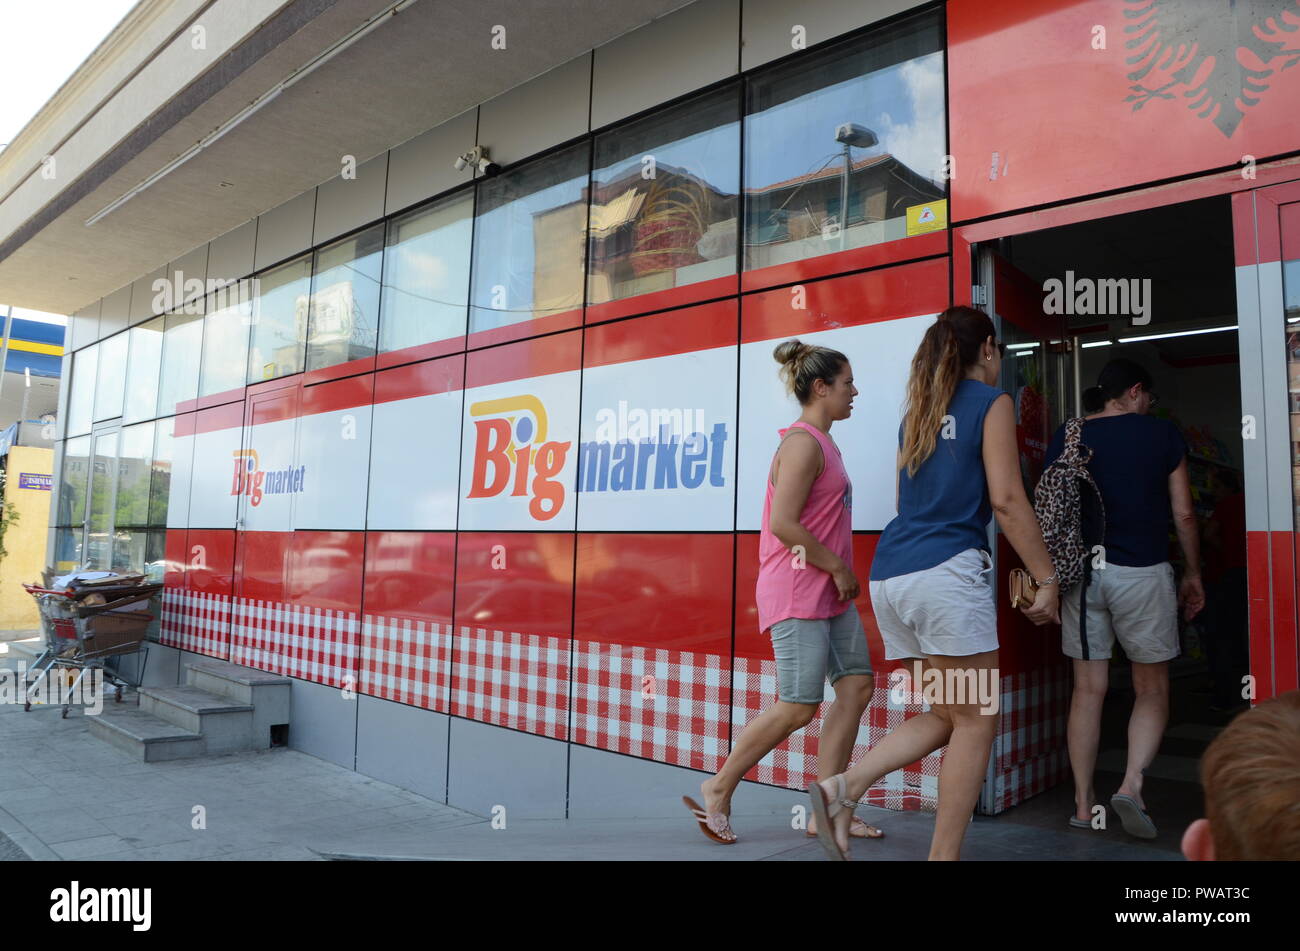 Grand marché supermarché shkoder albanie Banque D'Images